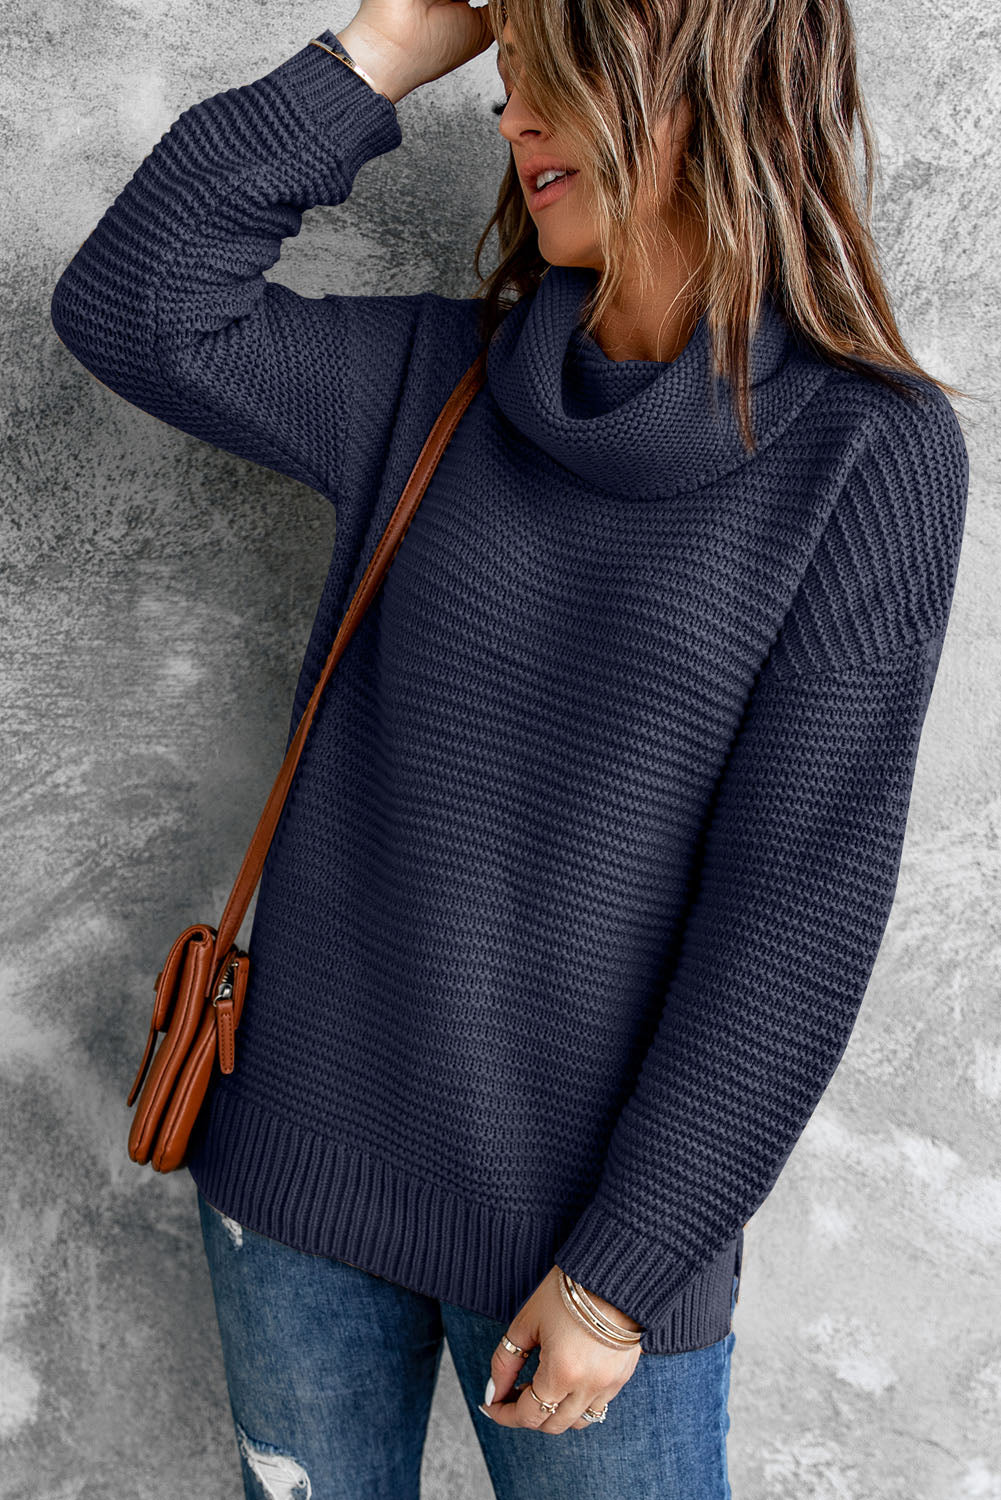 Horizontal Ribbing Turtleneck Sweater  | KIKI COUTURE-Women's Clothing, Designer Fashions, Shoes, Bags